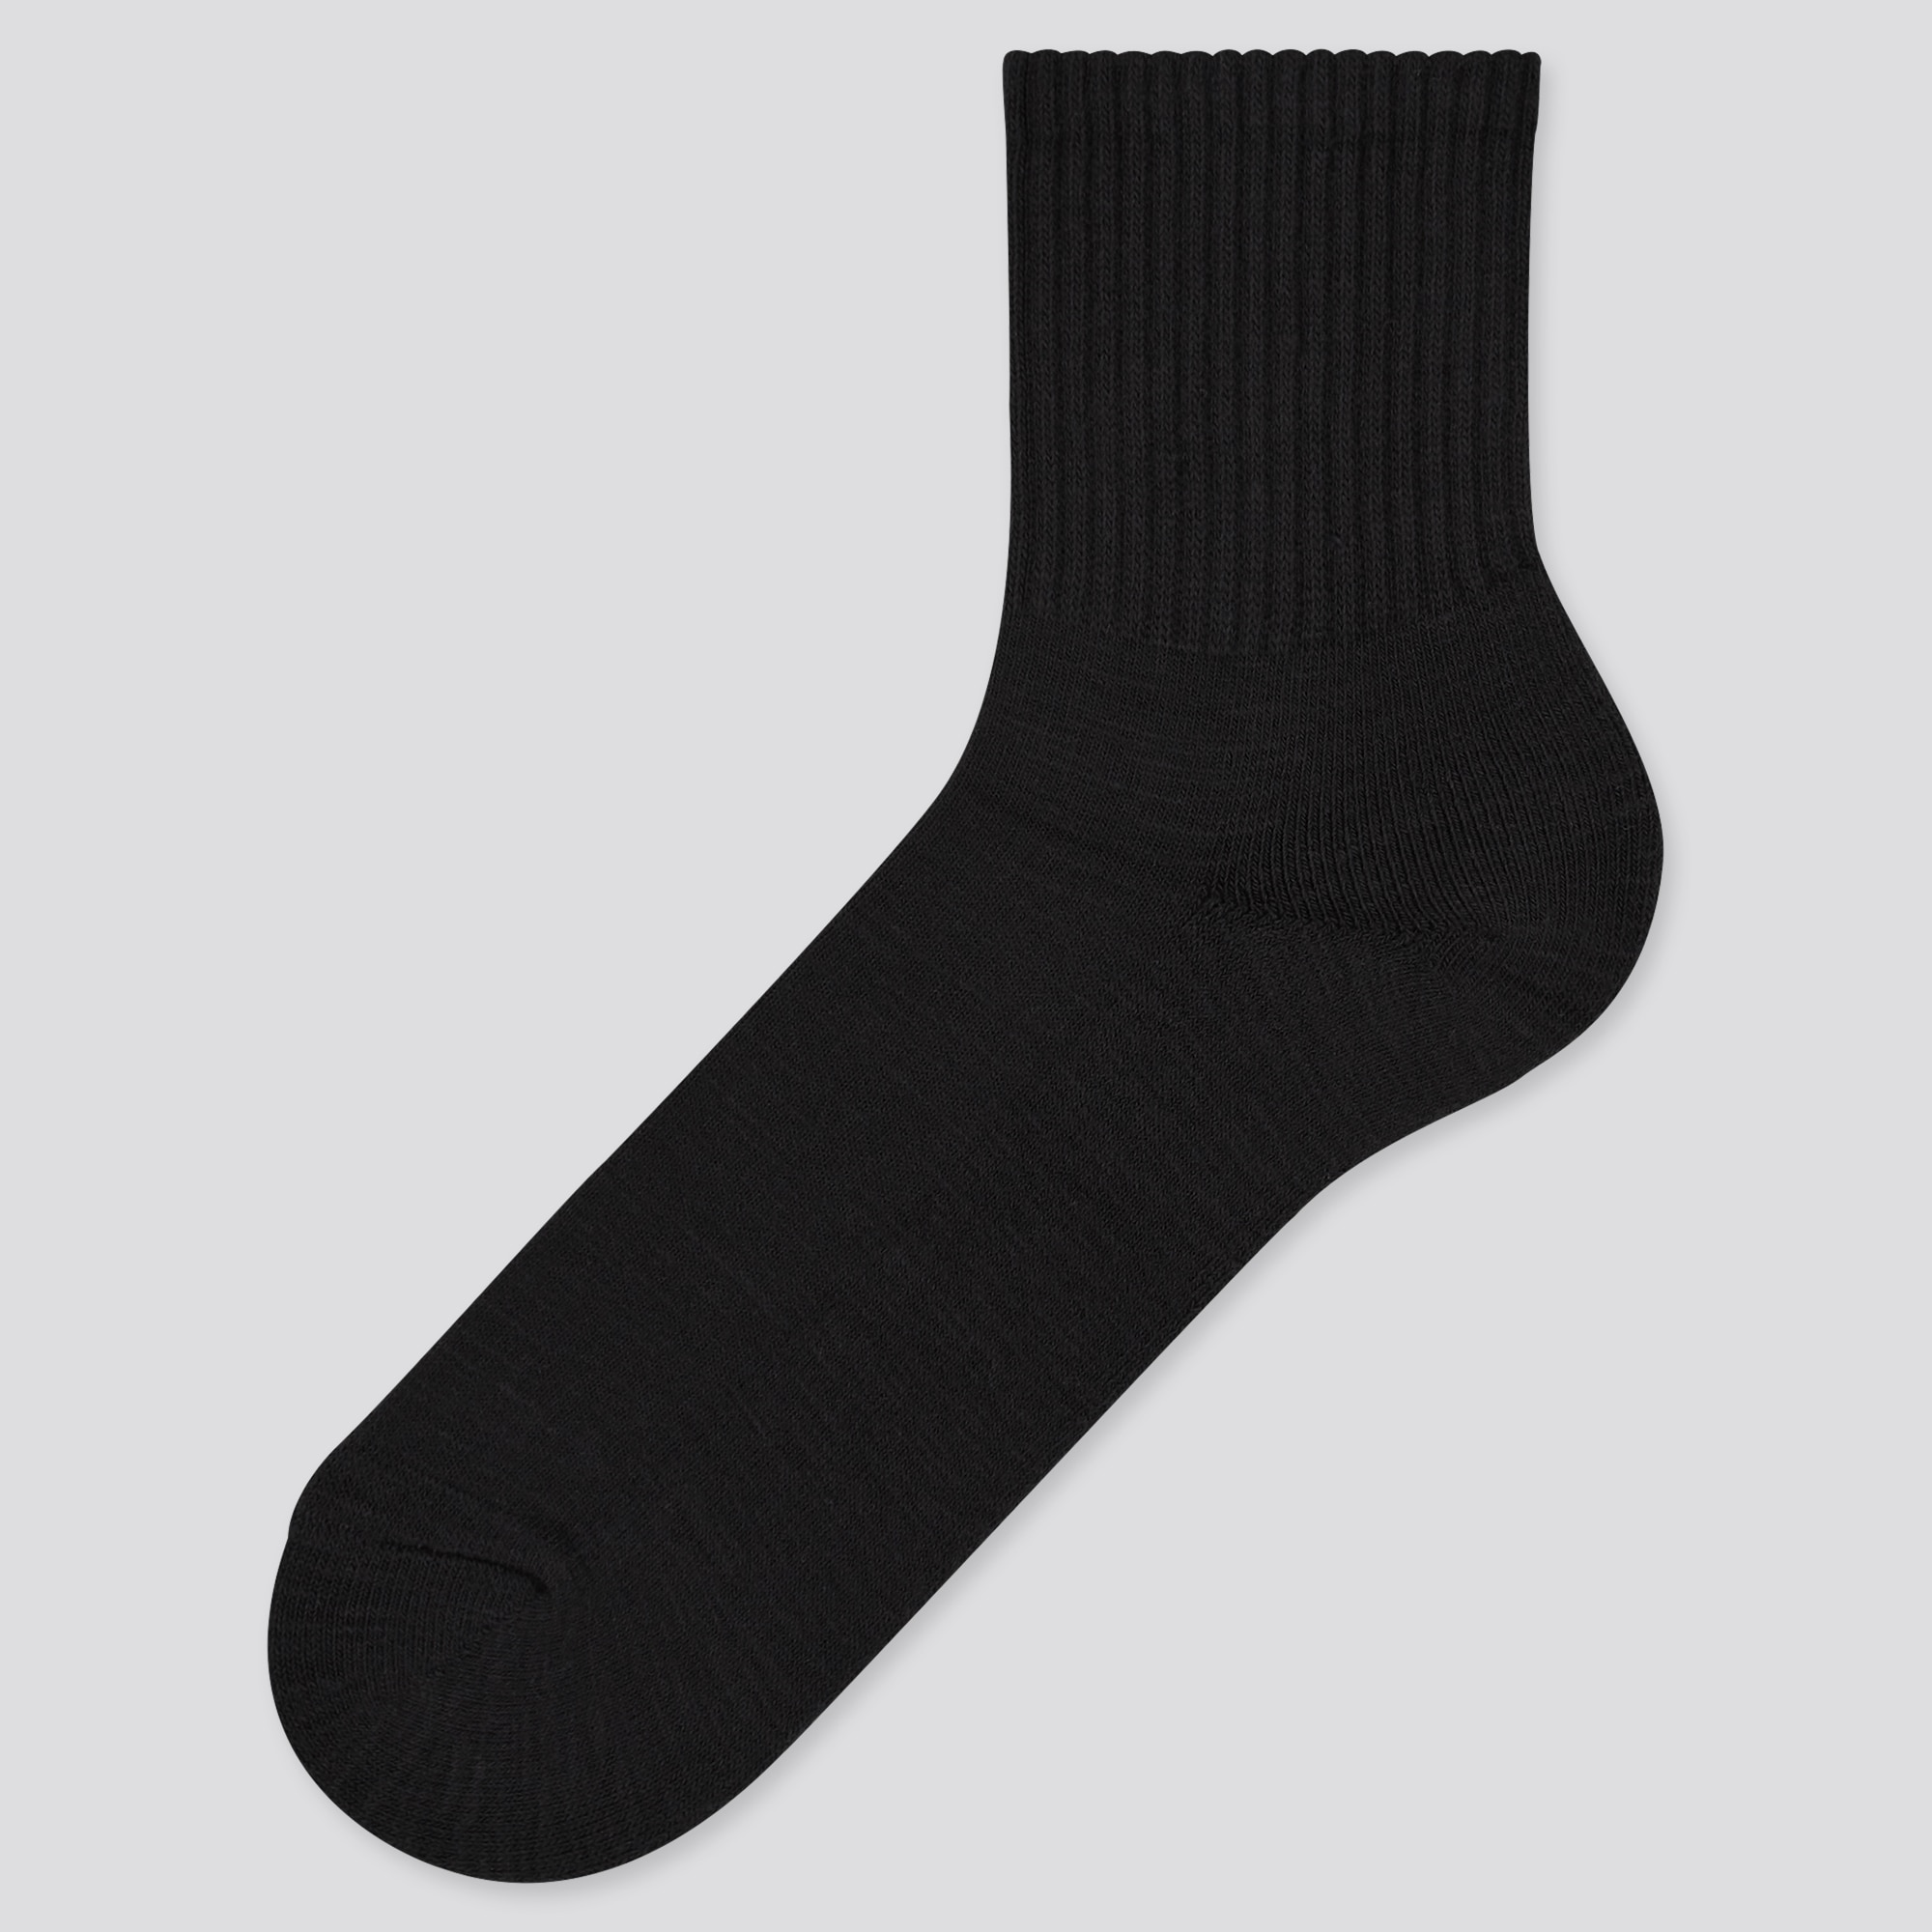 UNIQLO Sinker Pile Half Socks | StyleHint